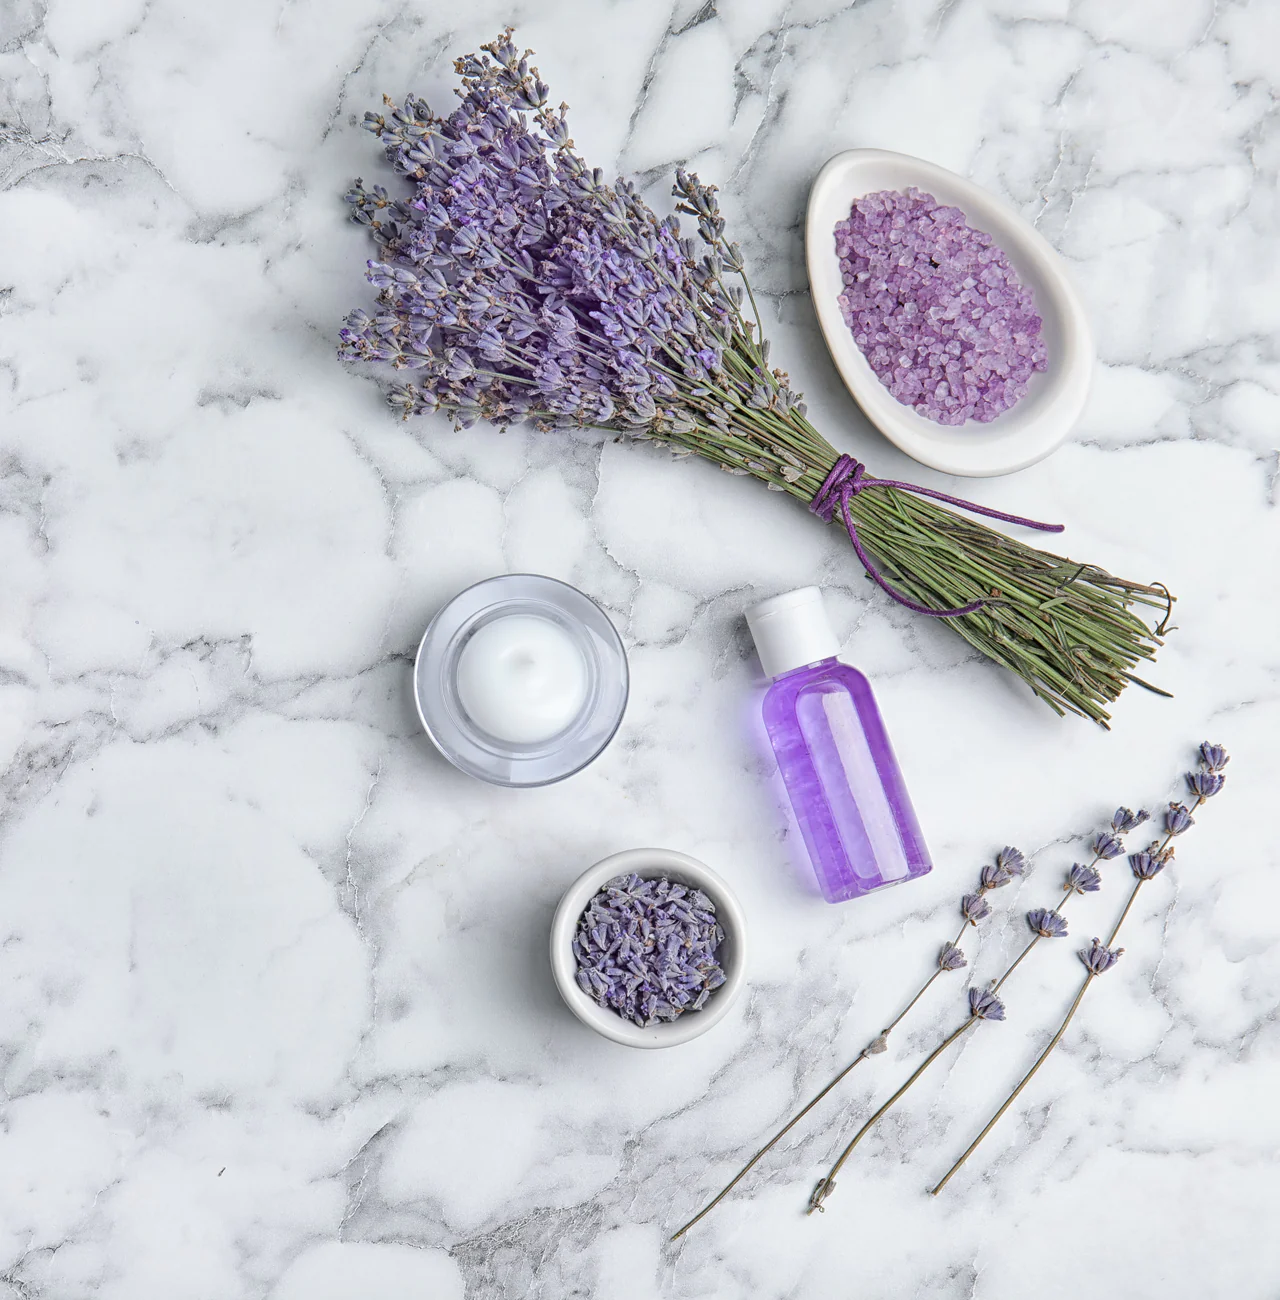 Lavendel uit eigen tuin gebruiken op je bruiloft lavendelolie